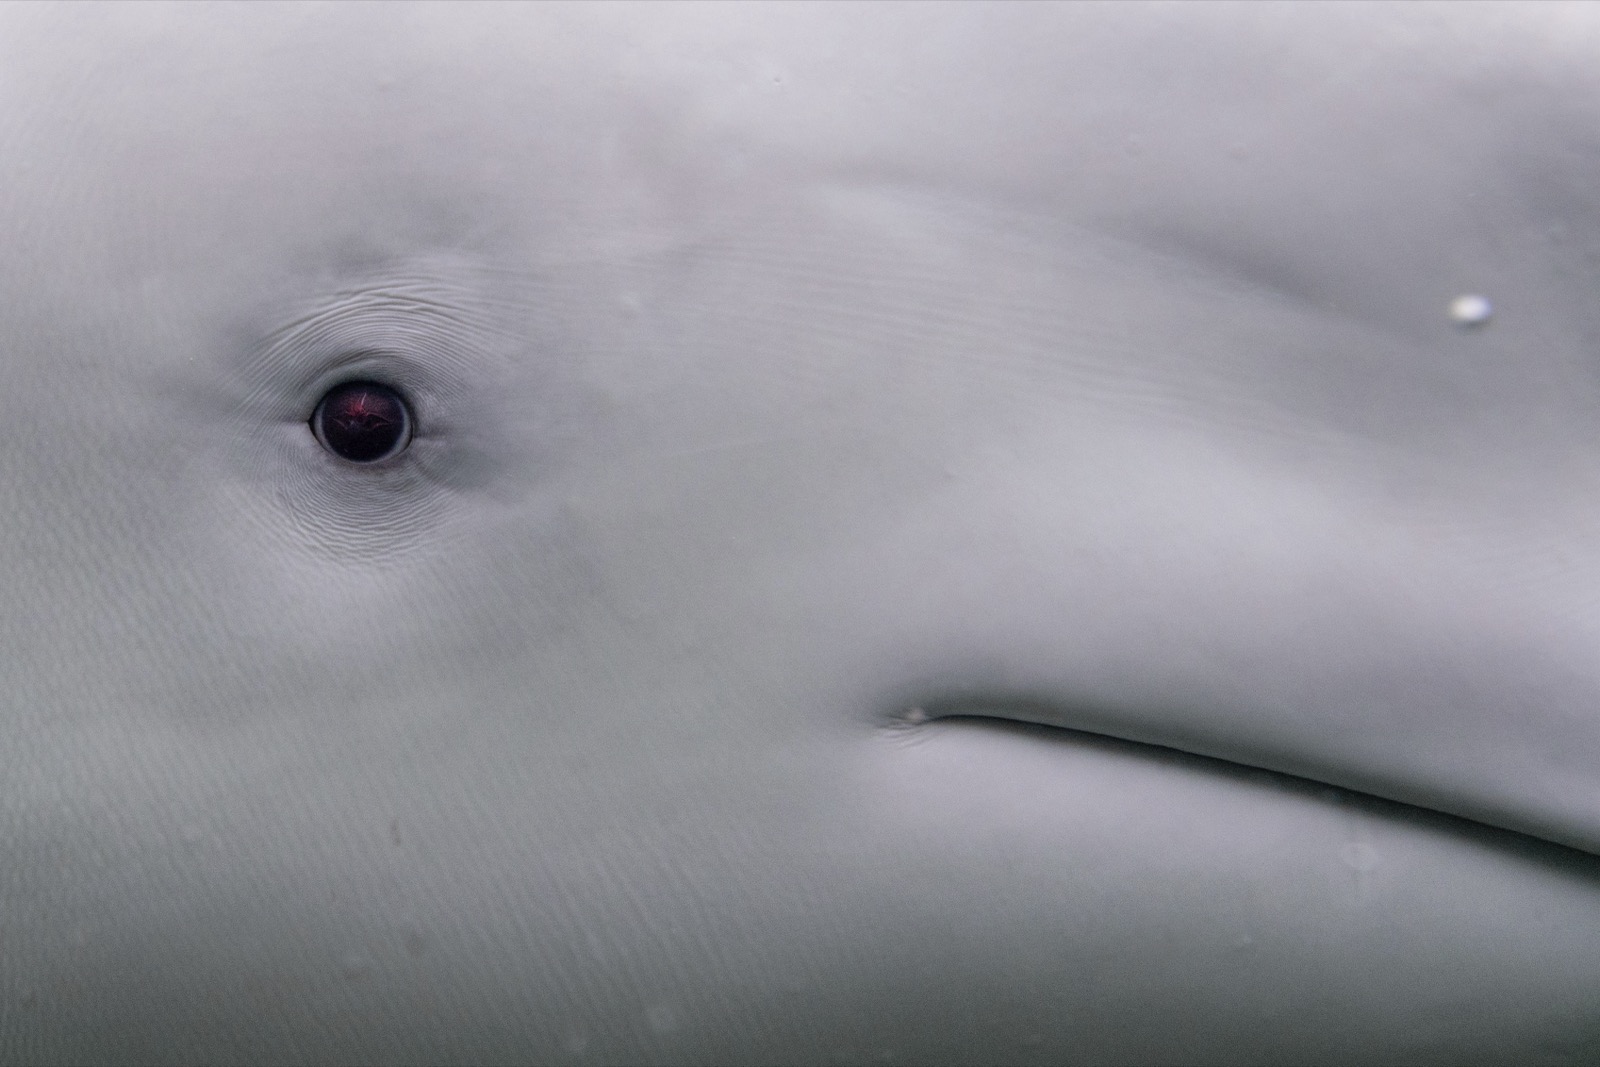 Beluga whale eye